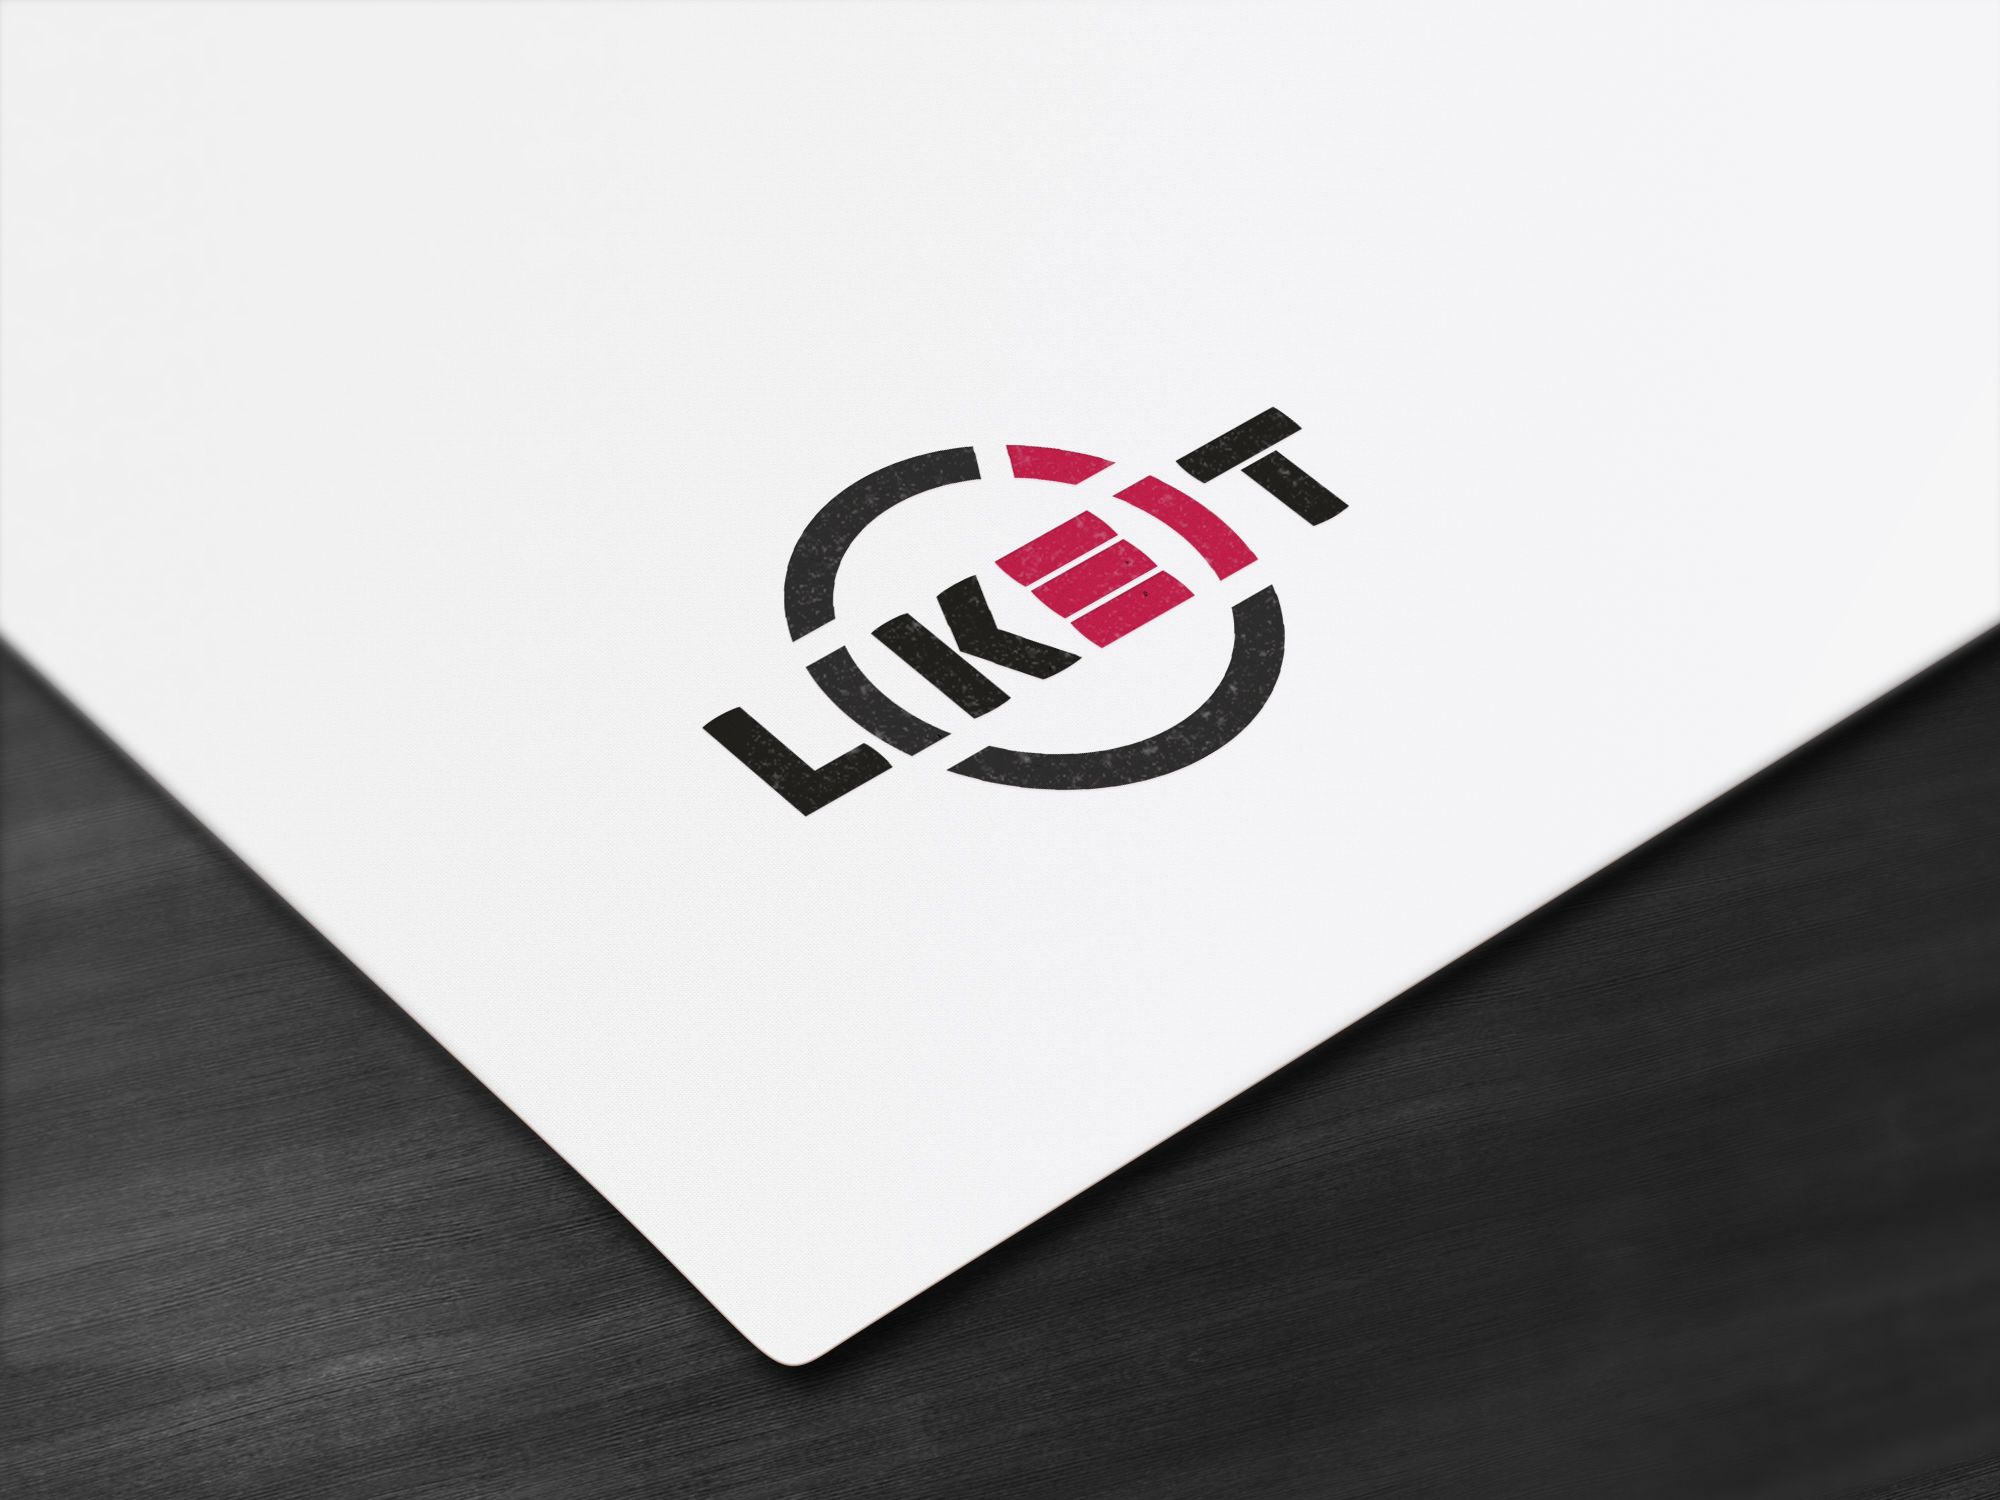 Логотип для LikeIT - дизайнер markosov